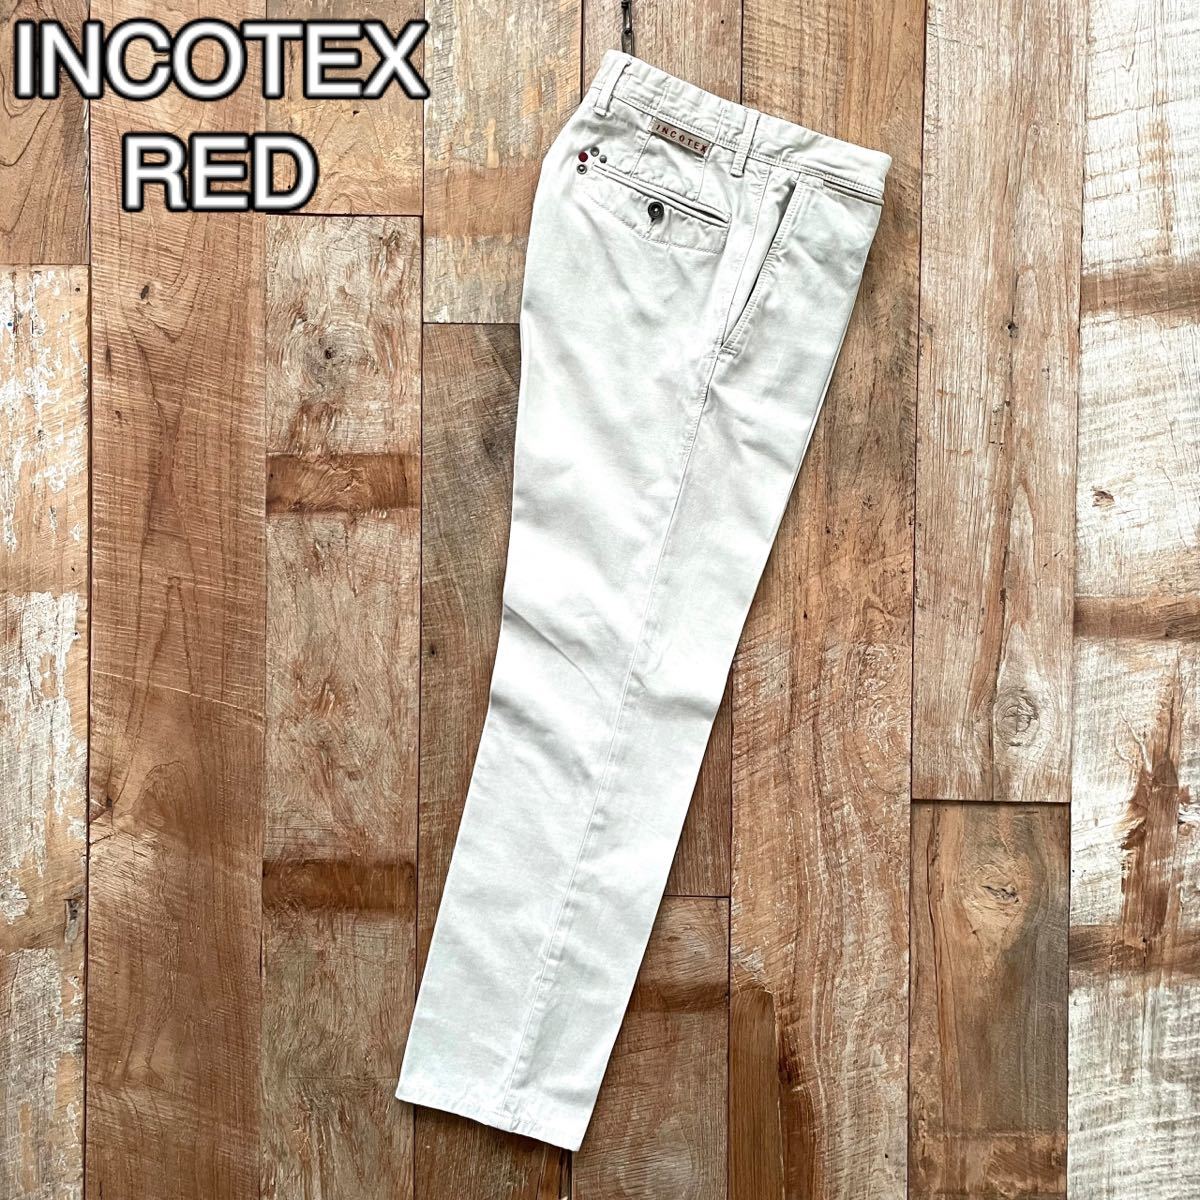 【美品】INCOTEX RED インコテックスレッド ヴィンテージ加工 テーパード コットン スラックス パンツ 30 ライトベージュ BEAMSF取扱